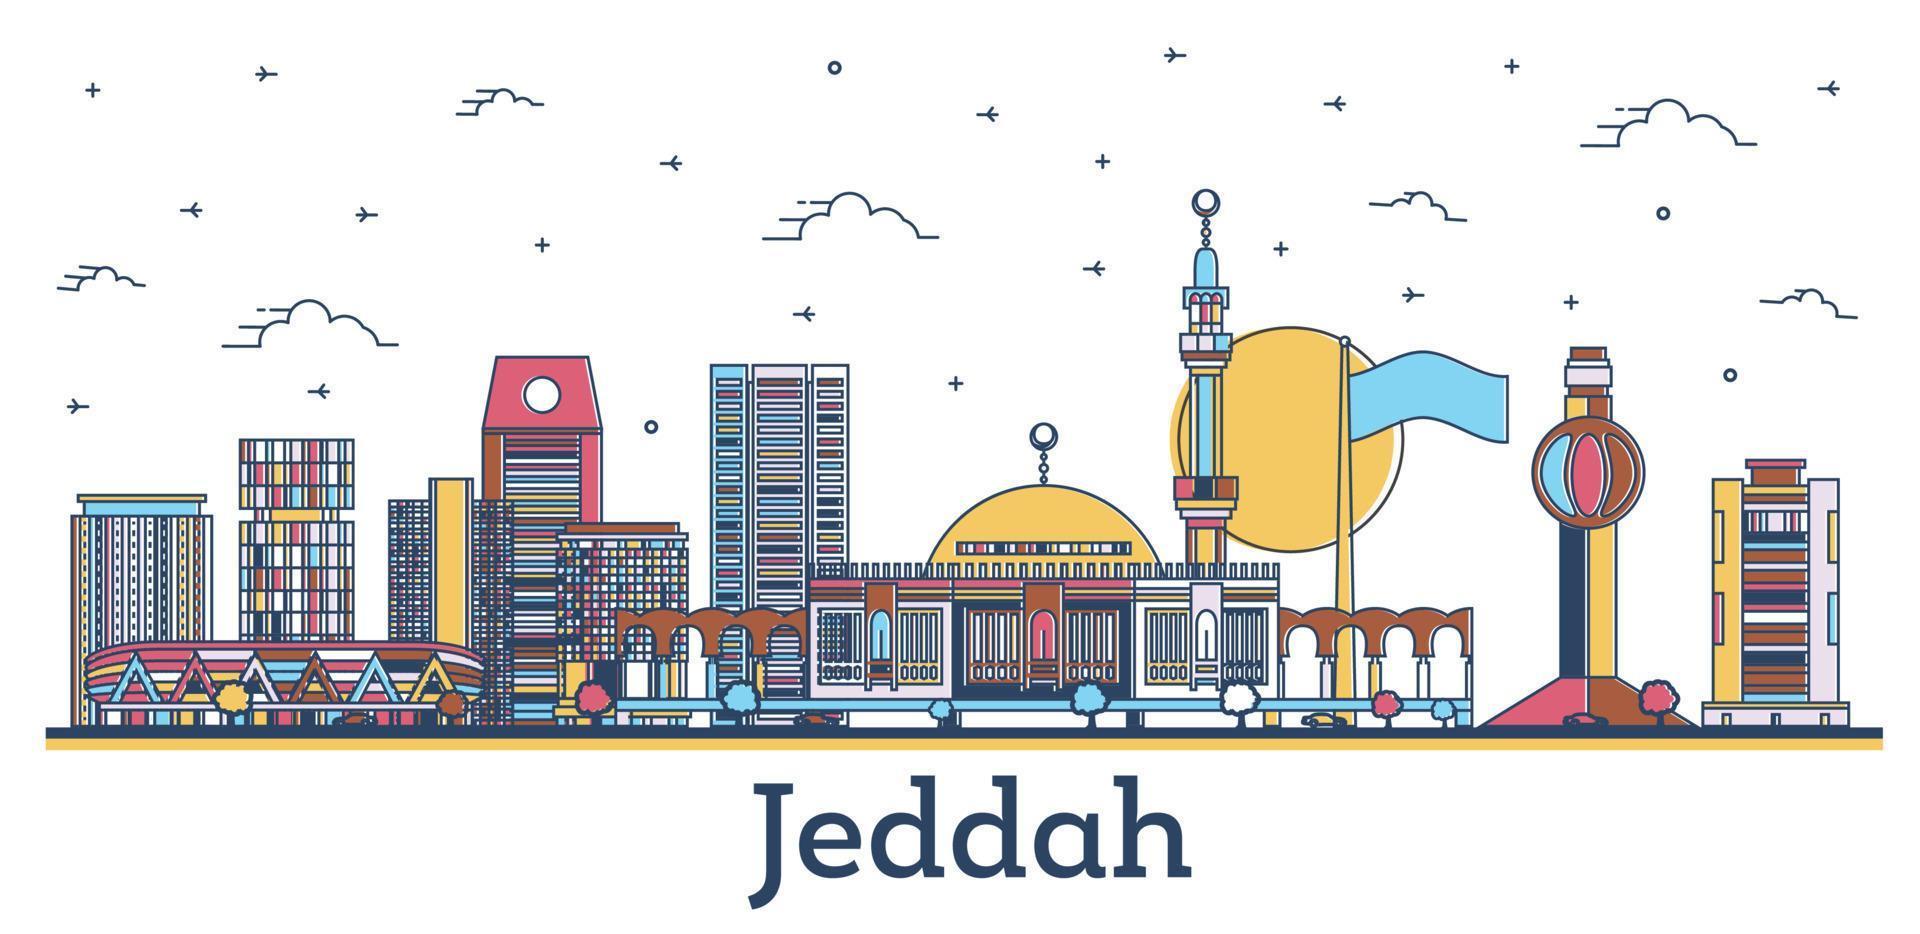 delineie o horizonte da cidade de jeddah arábia saudita com edifícios modernos e históricos coloridos isolados em branco. vetor